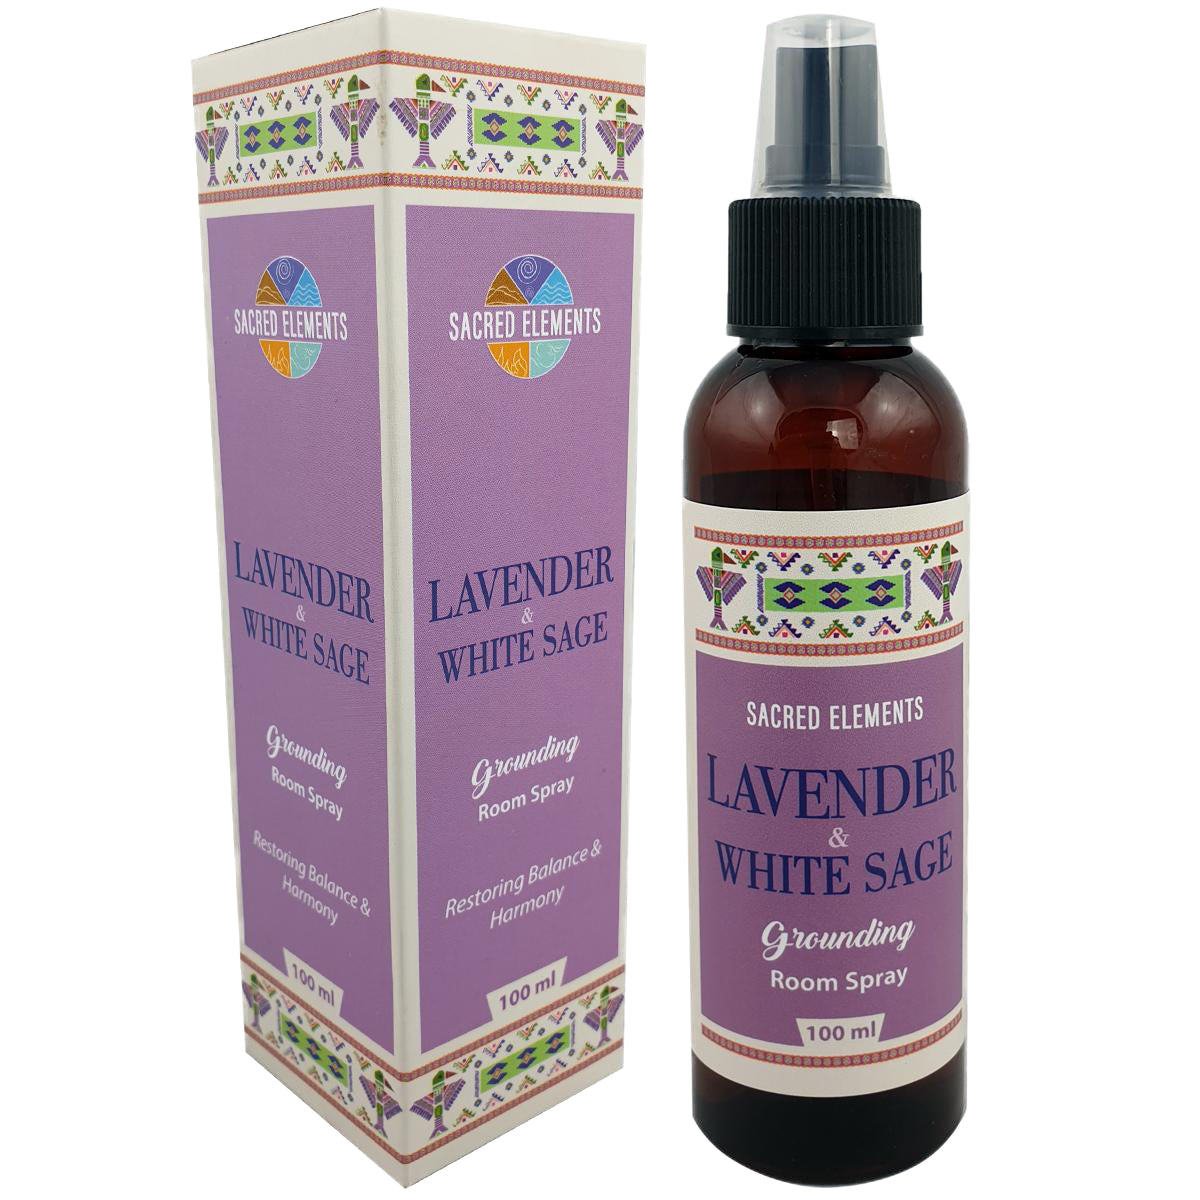 Lavender & White Sage Room Spray Sacred Elements